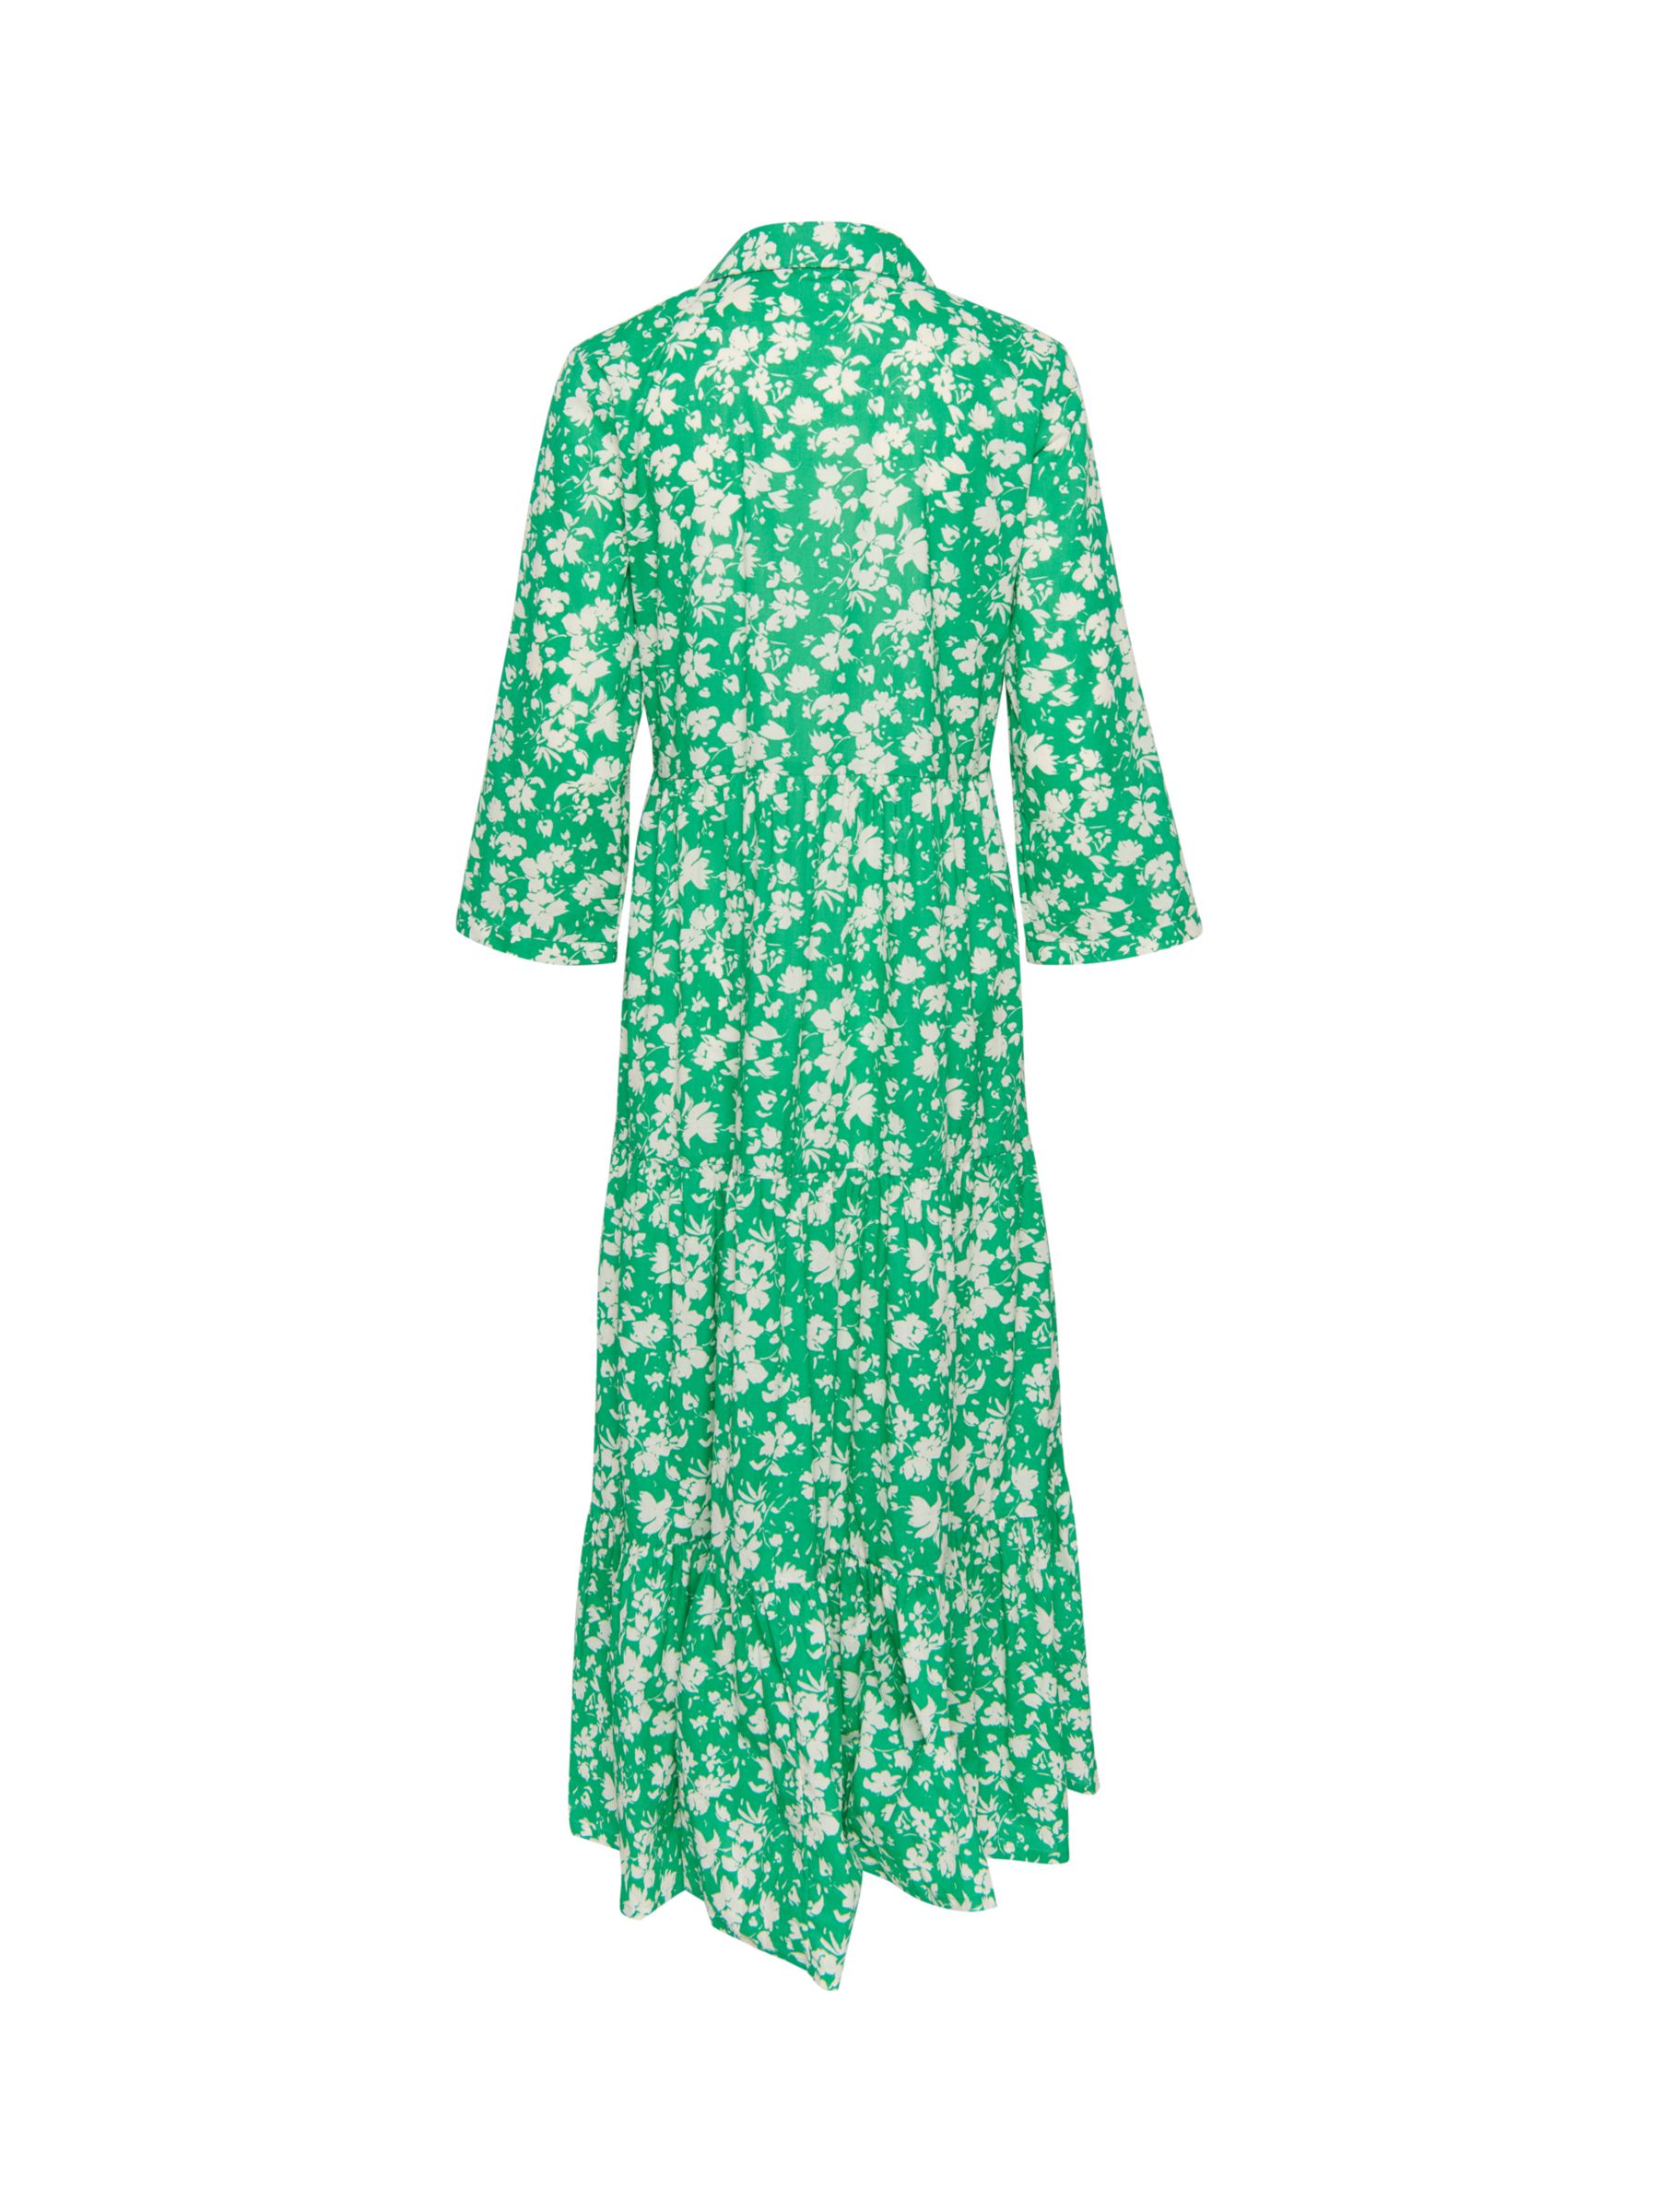 Saint Tropez Zus Long Sleeve Shirt Maxi Dress, Bright Green, S